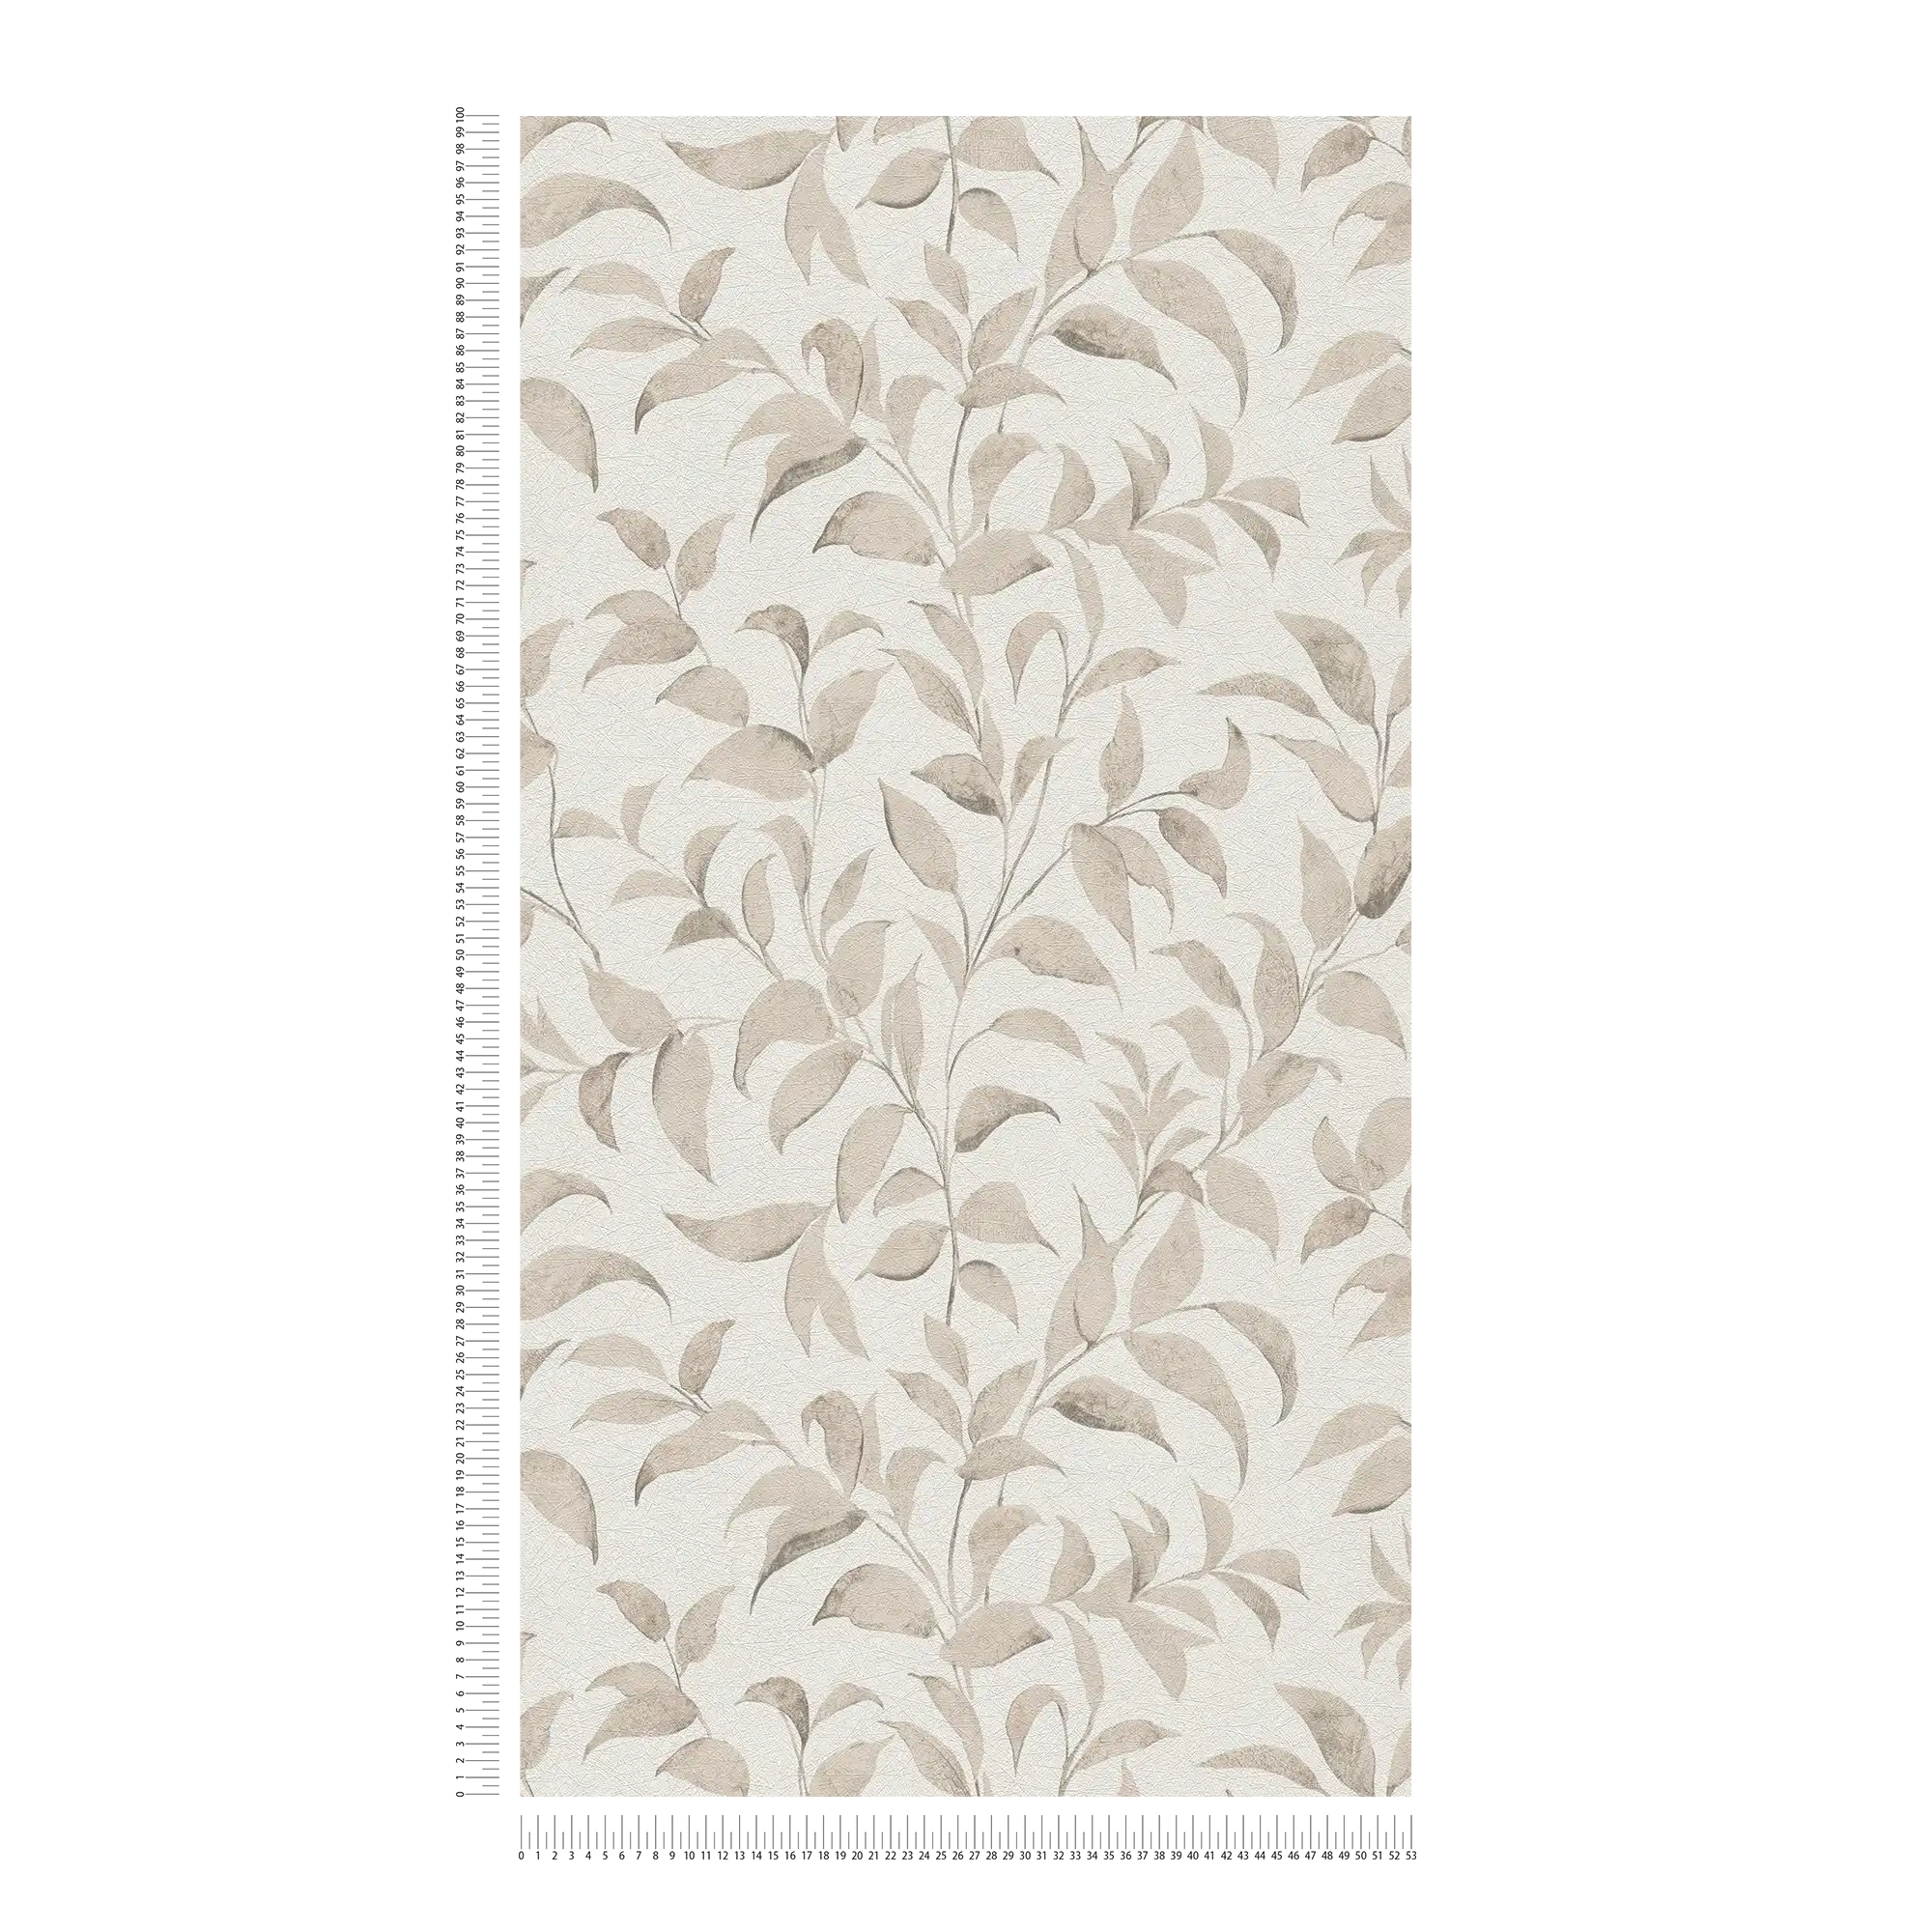             Florale Blätter-Tapete strukturiert schimmernd – Weiß, Grau, Beige
        